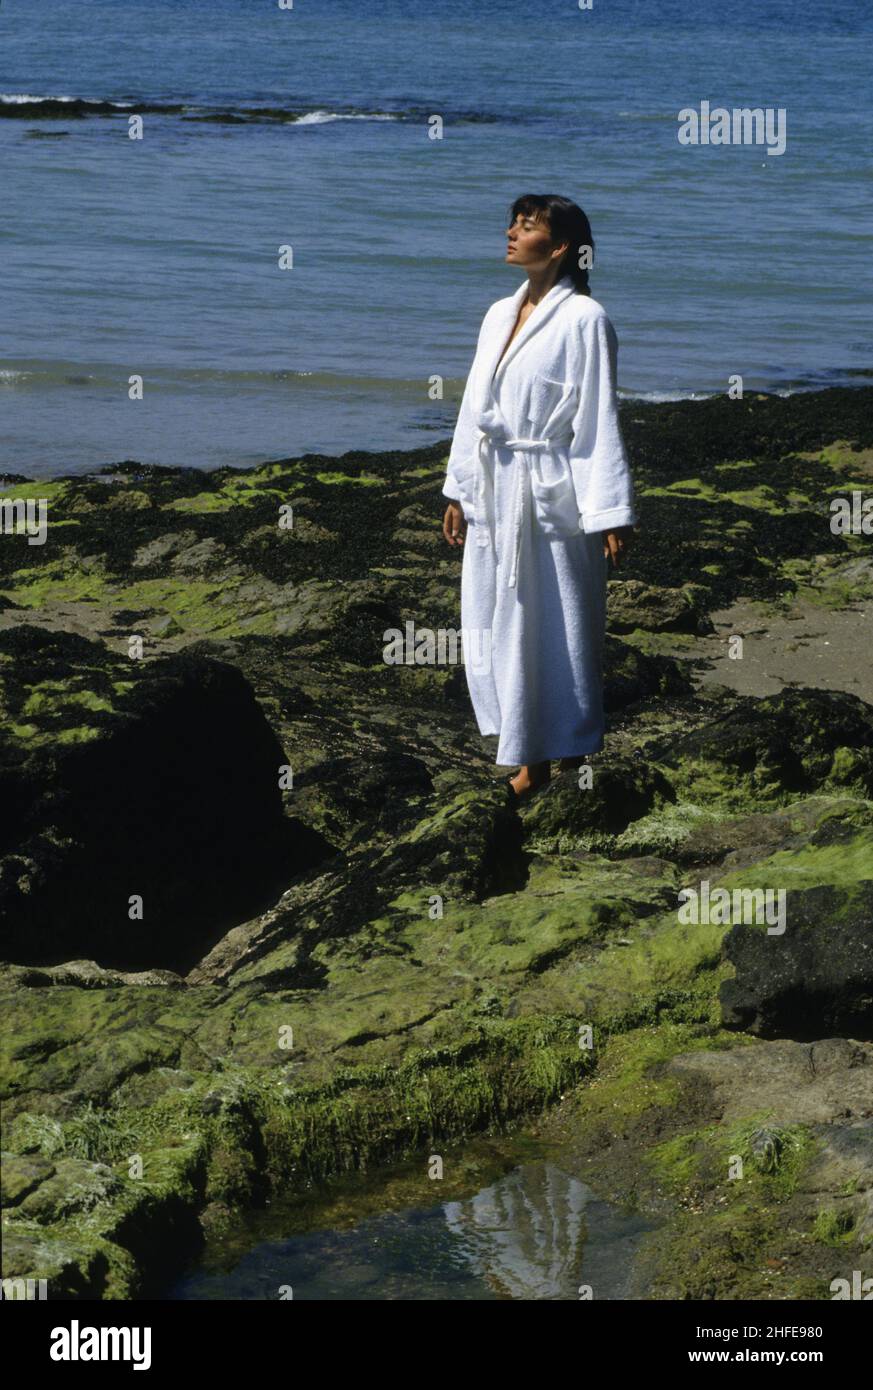 capelli scuri giovane donna si levano in piedi in su con abito da toletta di talassoterapia bianco che cammina sulla roccia della spiaggia abbondanza di sagrass Foto Stock